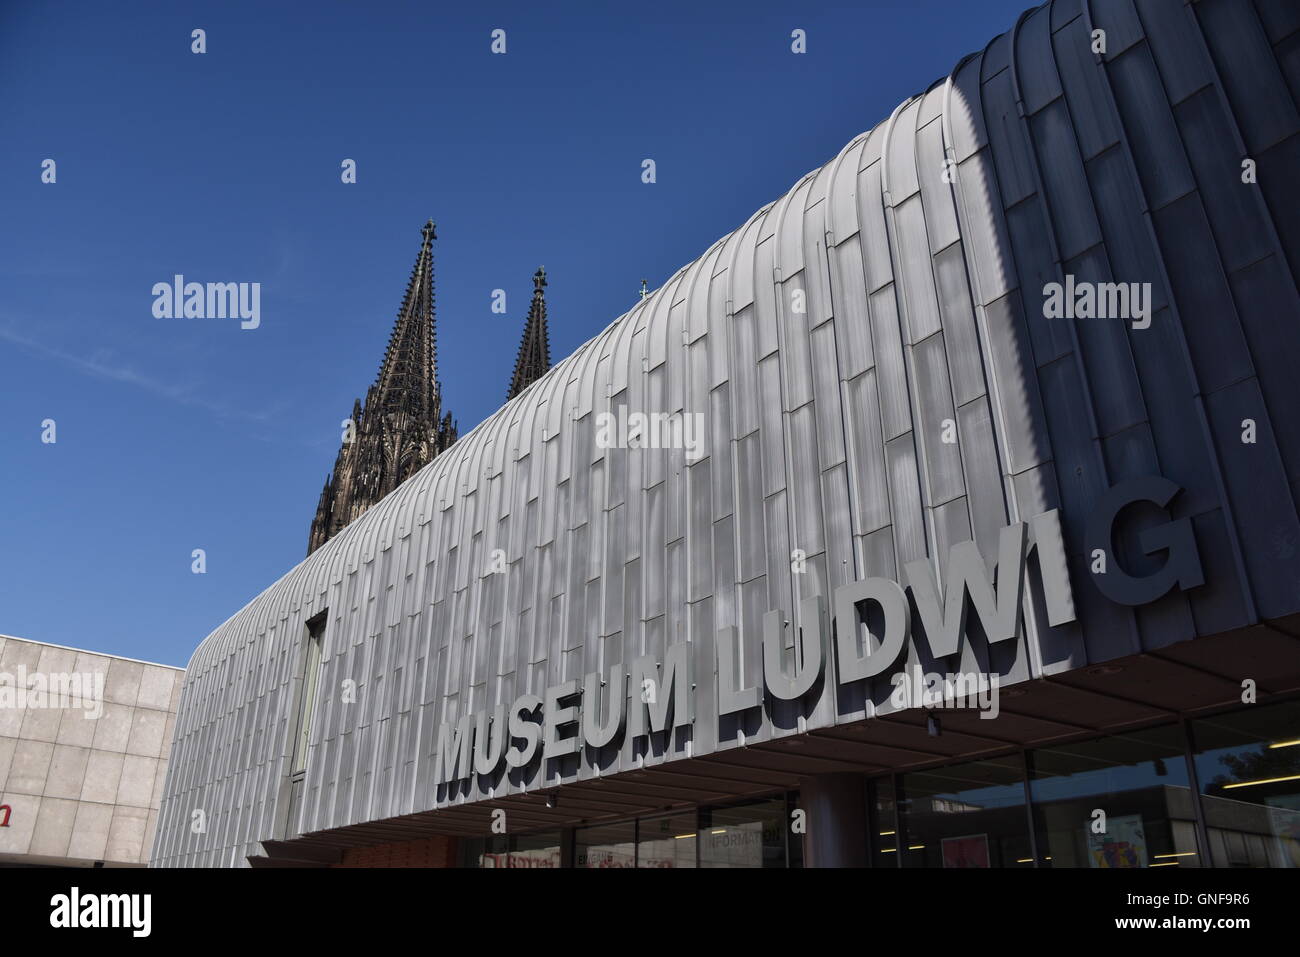 Cologne, Allemagne. Août 26, 2016. Musée Ludwig, le musée romain-germanique et cathédrale de Cologne à Cologne, Allemagne, 26 août 2016. Photo : Horst Galuschka - AUCUN FIL - SERVICE/dpa/Alamy Live News Banque D'Images